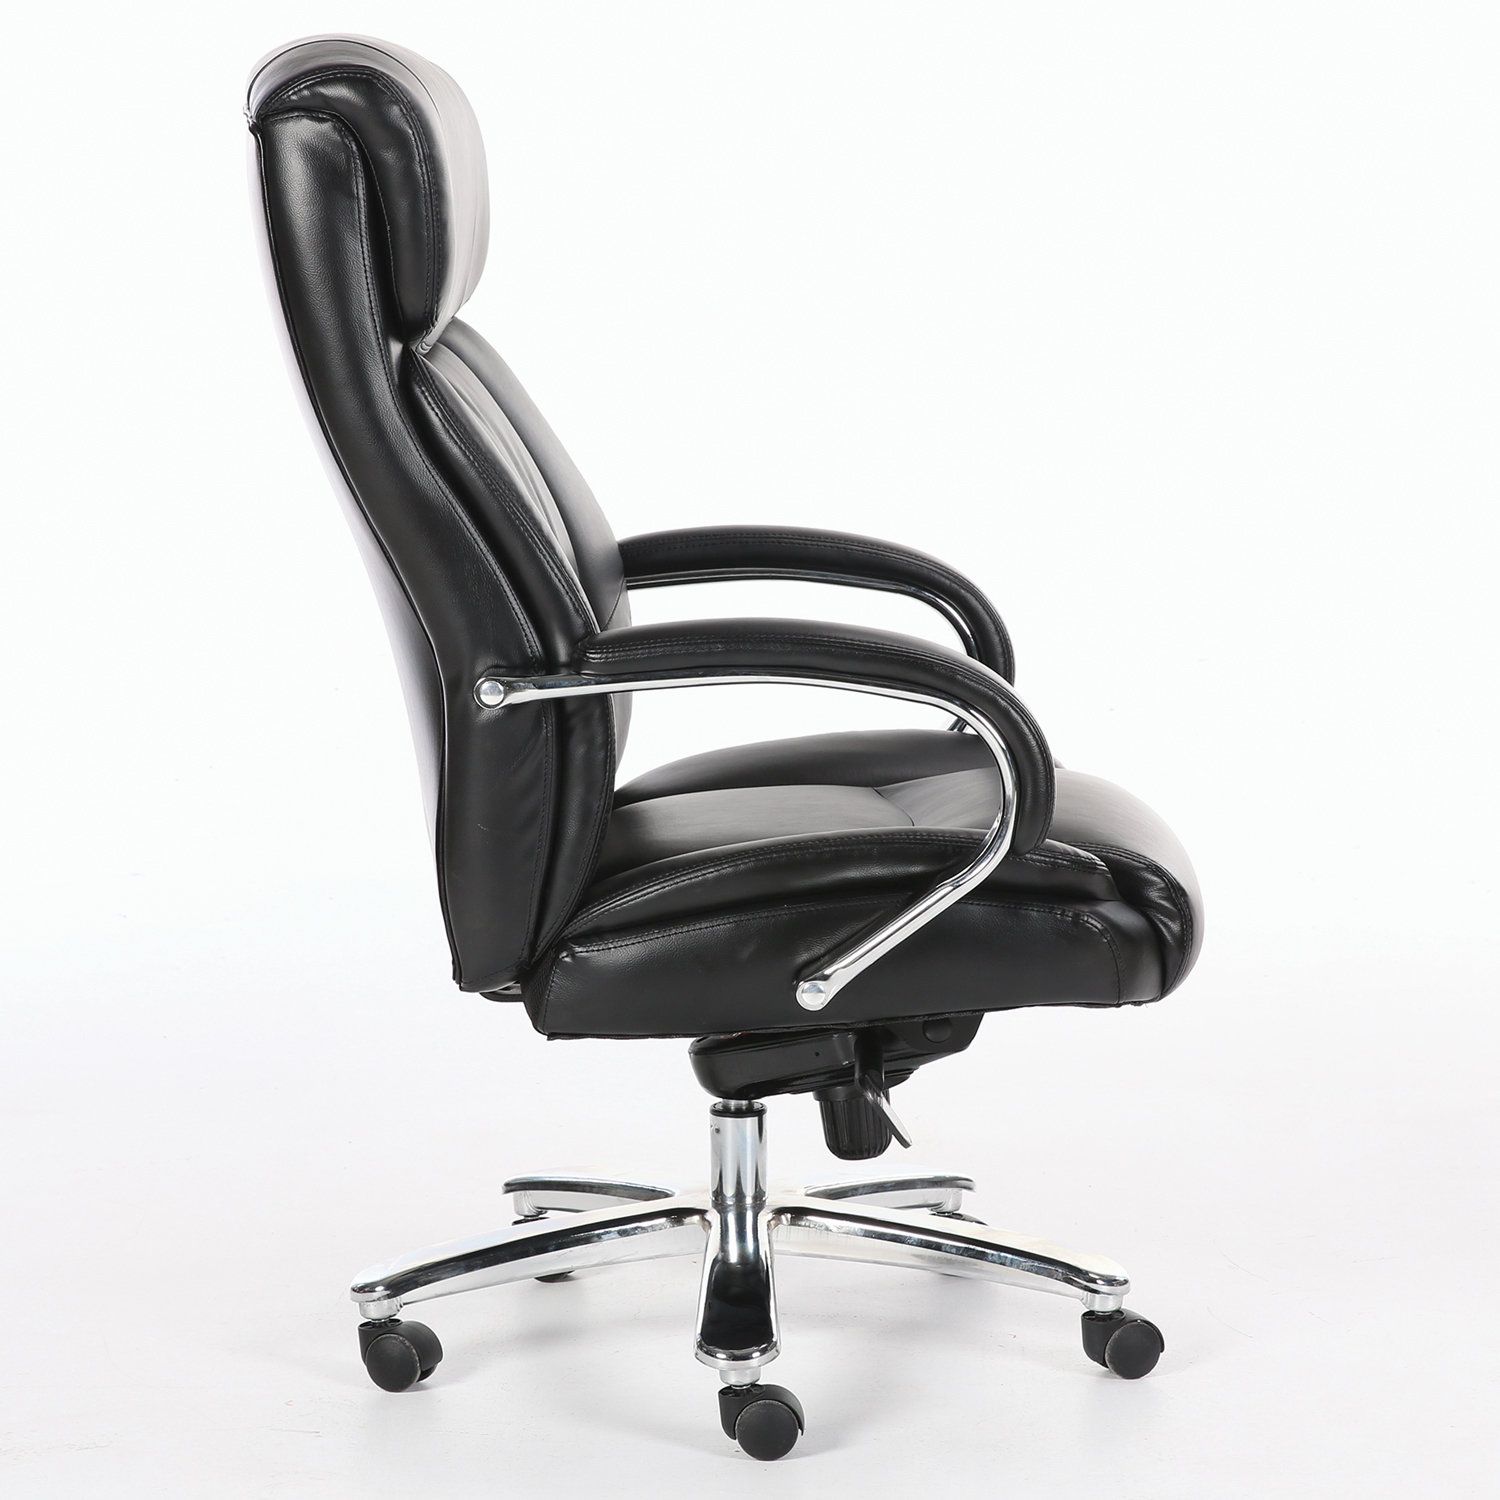 Брабикс кресла. Кресло Brabix Premium status HD-003. Кресло руководителя Brabix Premium status HD-003. БРАБИКС кресло ex-580. Кресло руководителя Brabix direct ex-580 Premium, натуральная кожа, черный.